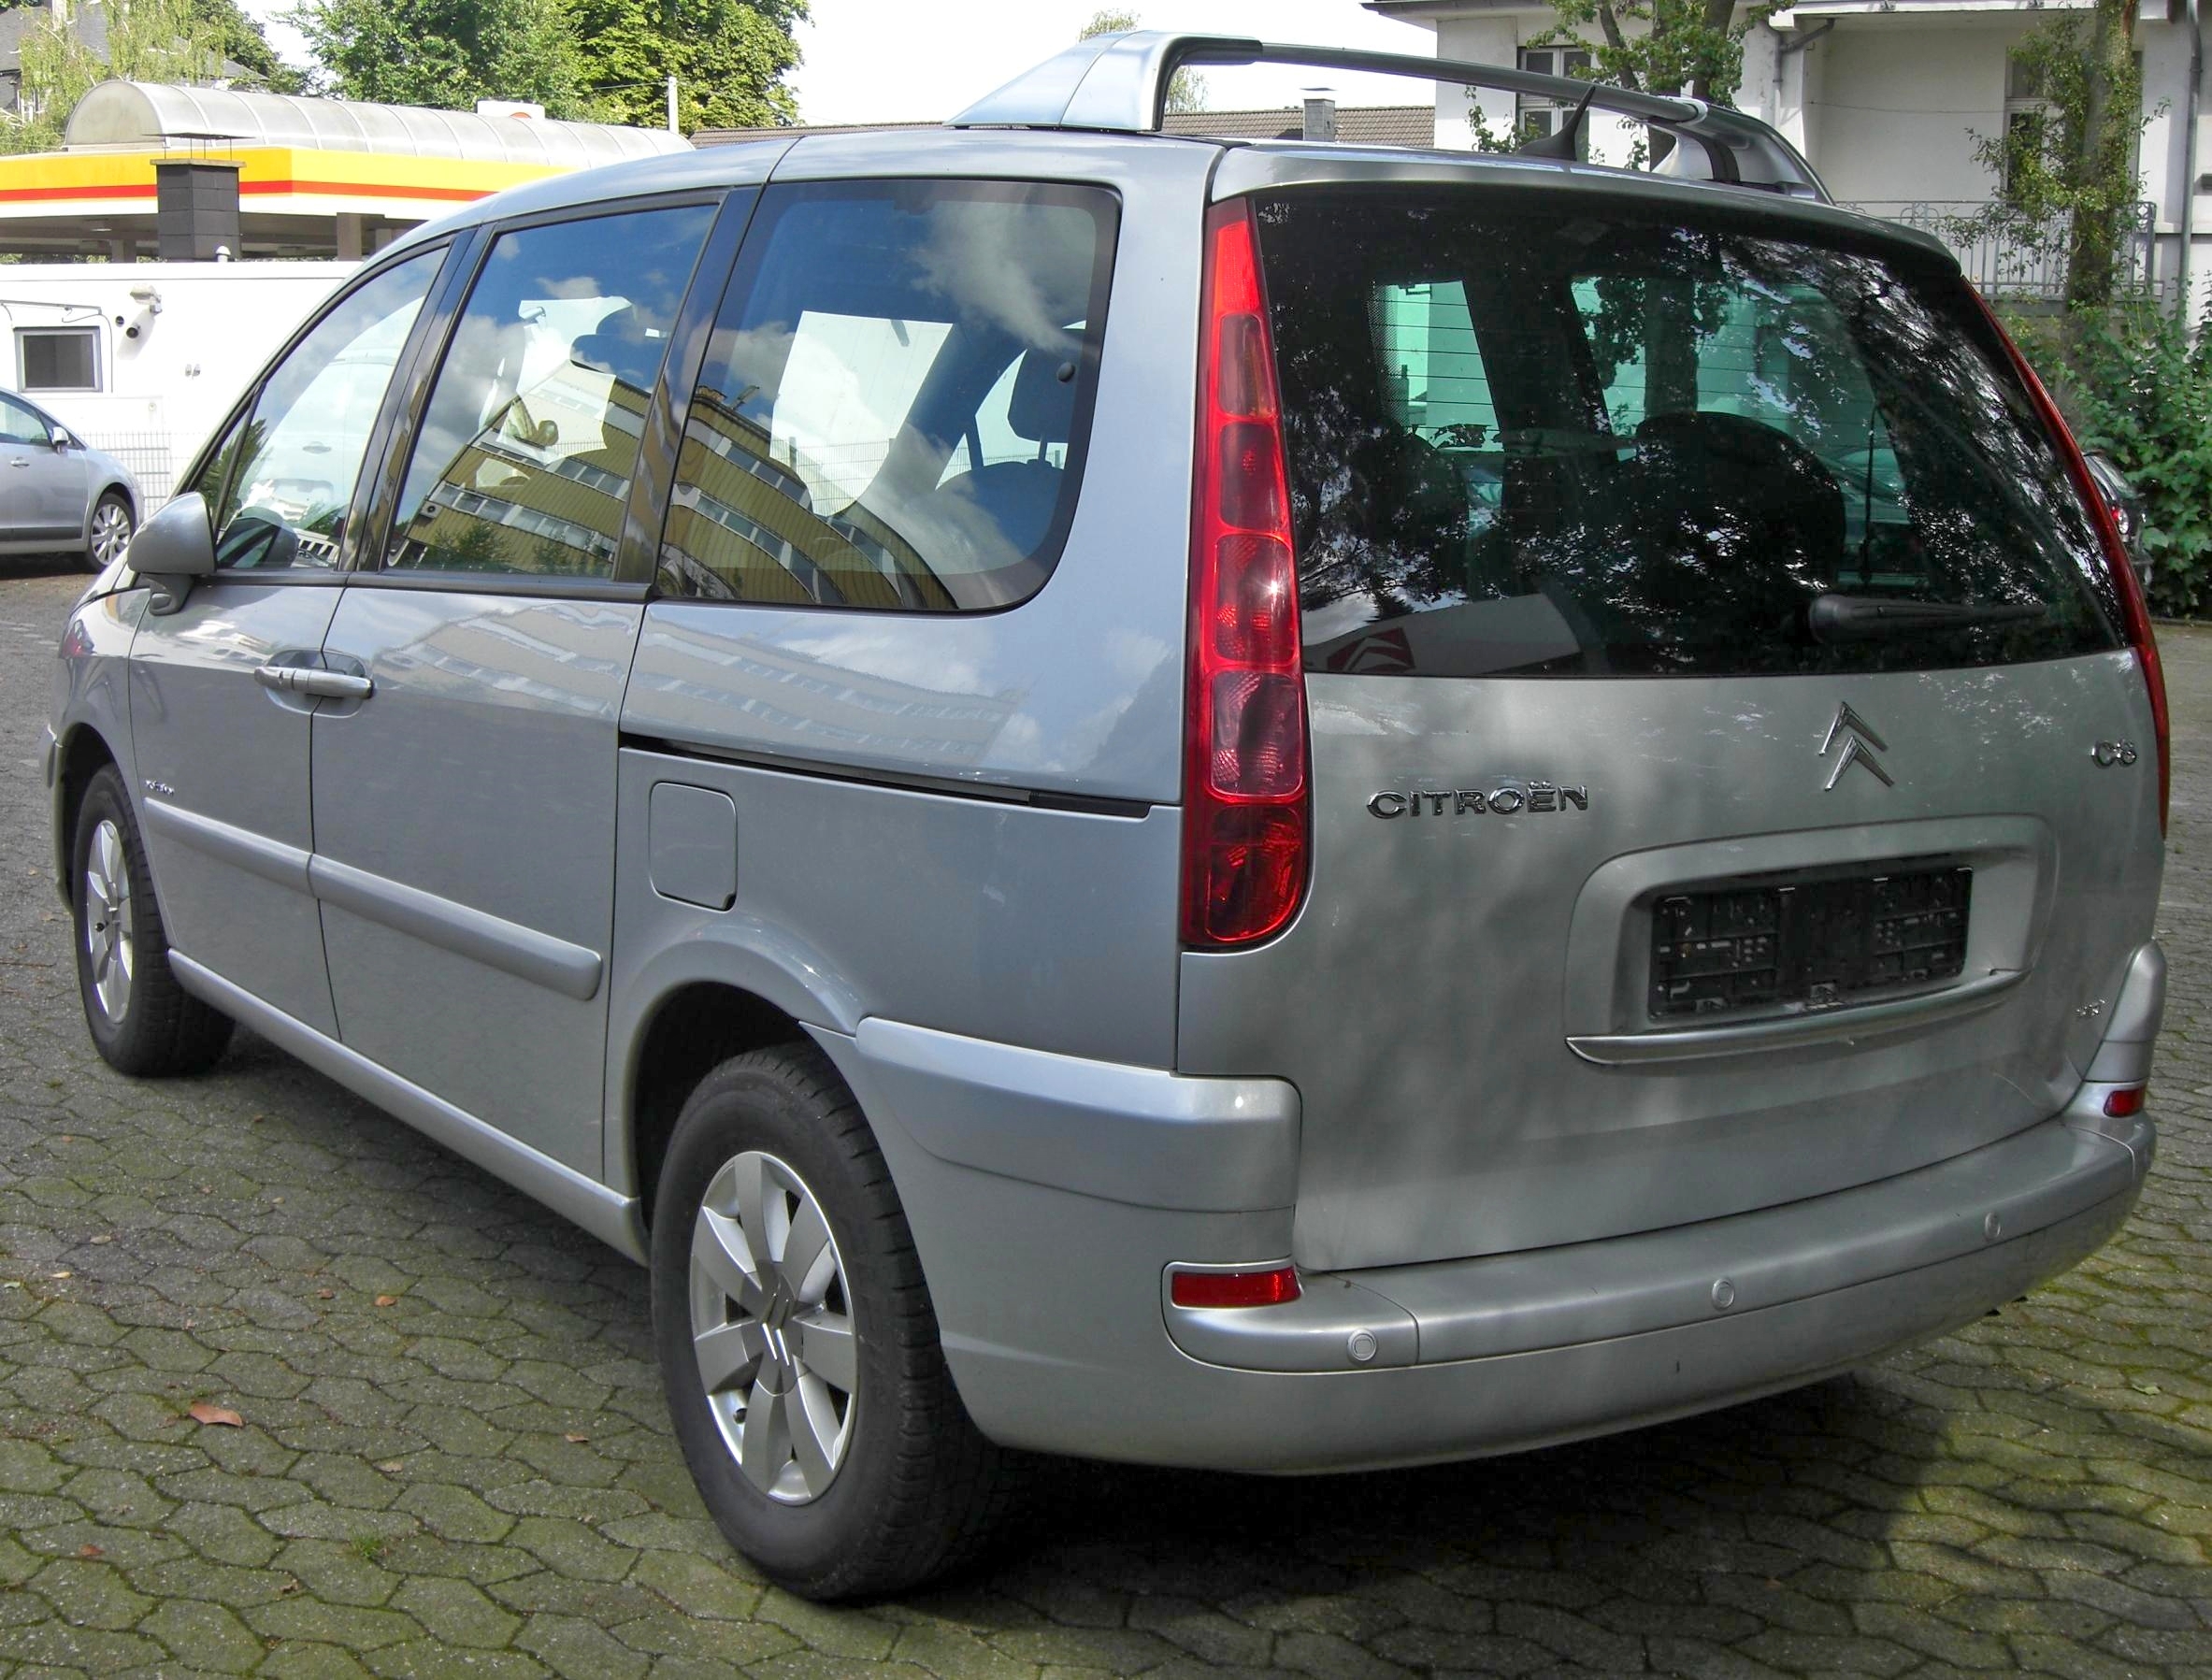 canvas Spektakel vaas File:Citroën C8 rear.jpg - Wikimedia Commons